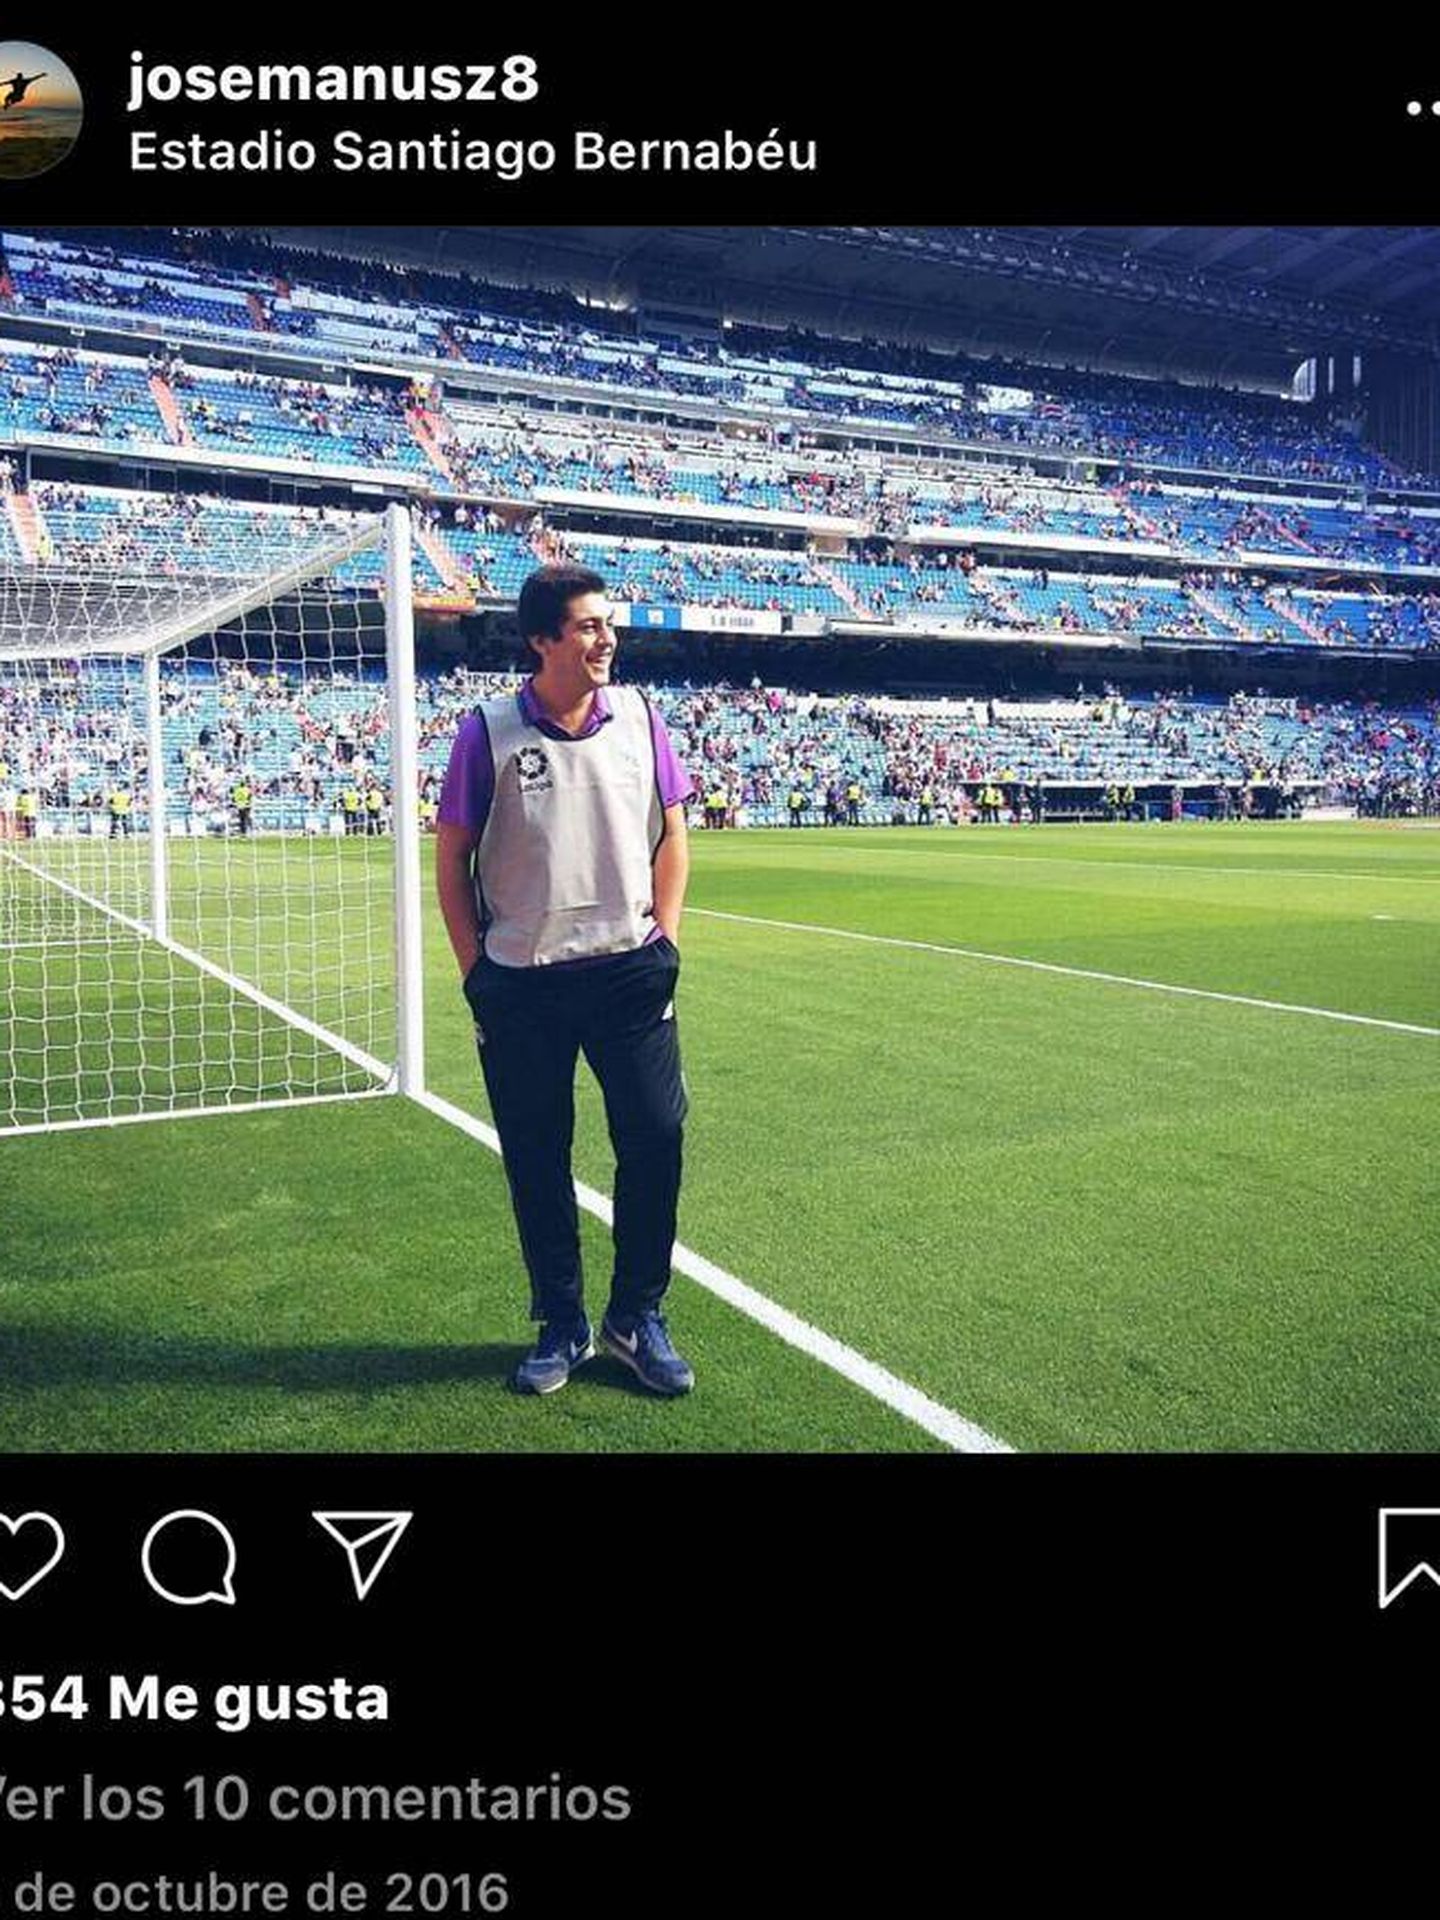 José Ramón Sandoval, de recogelotas en el Bernabéu, en su cuenta de Instagram